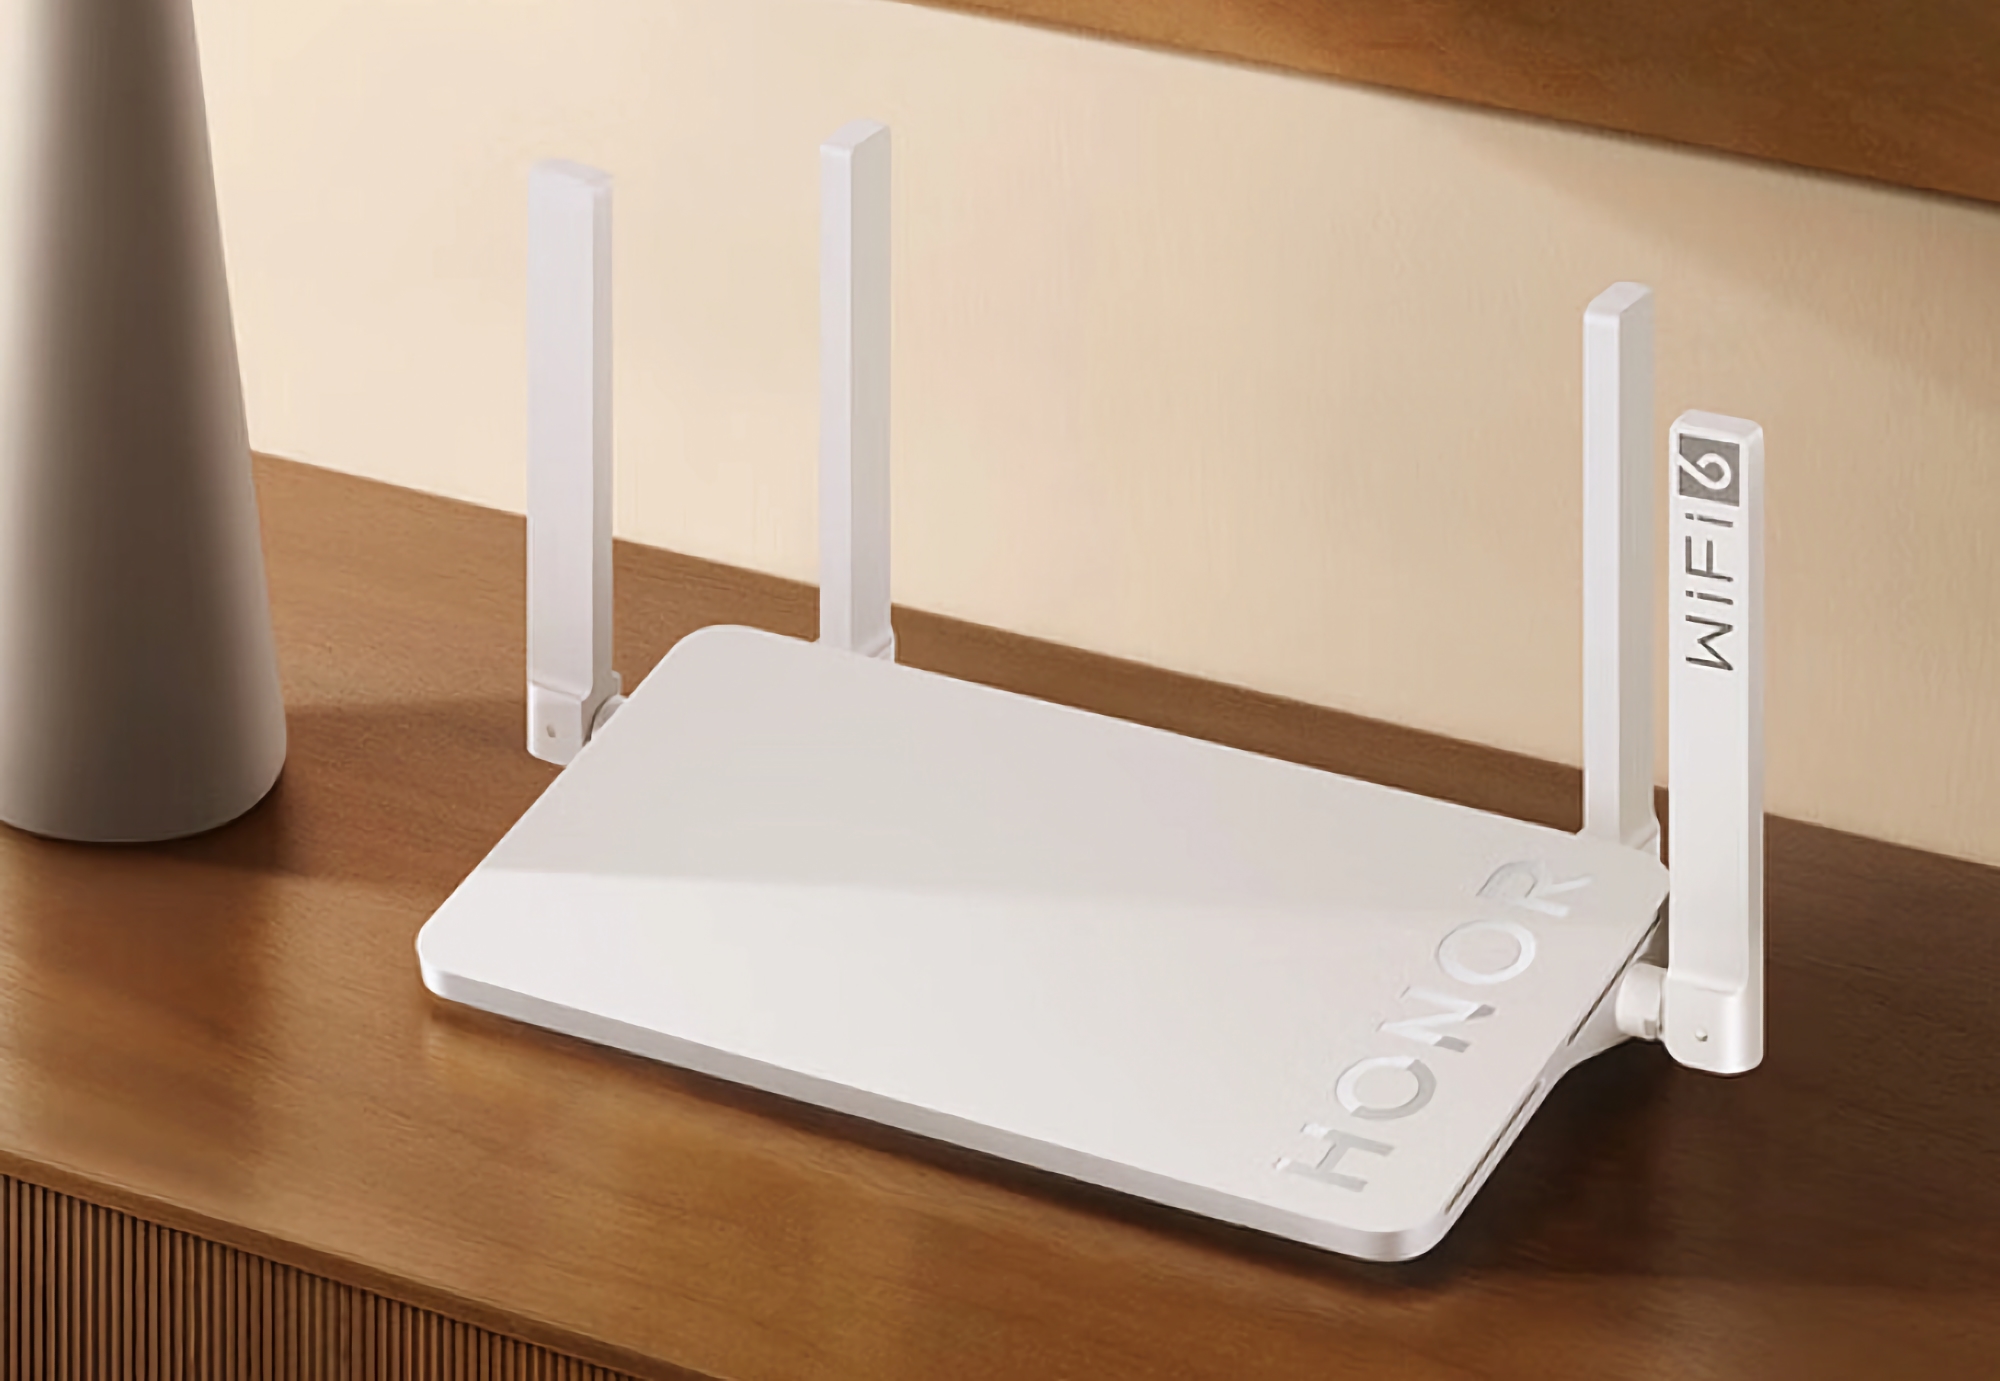 Honor presenta el router X4 Pro con Wi-Fi 6 y tres puertos Gigabit